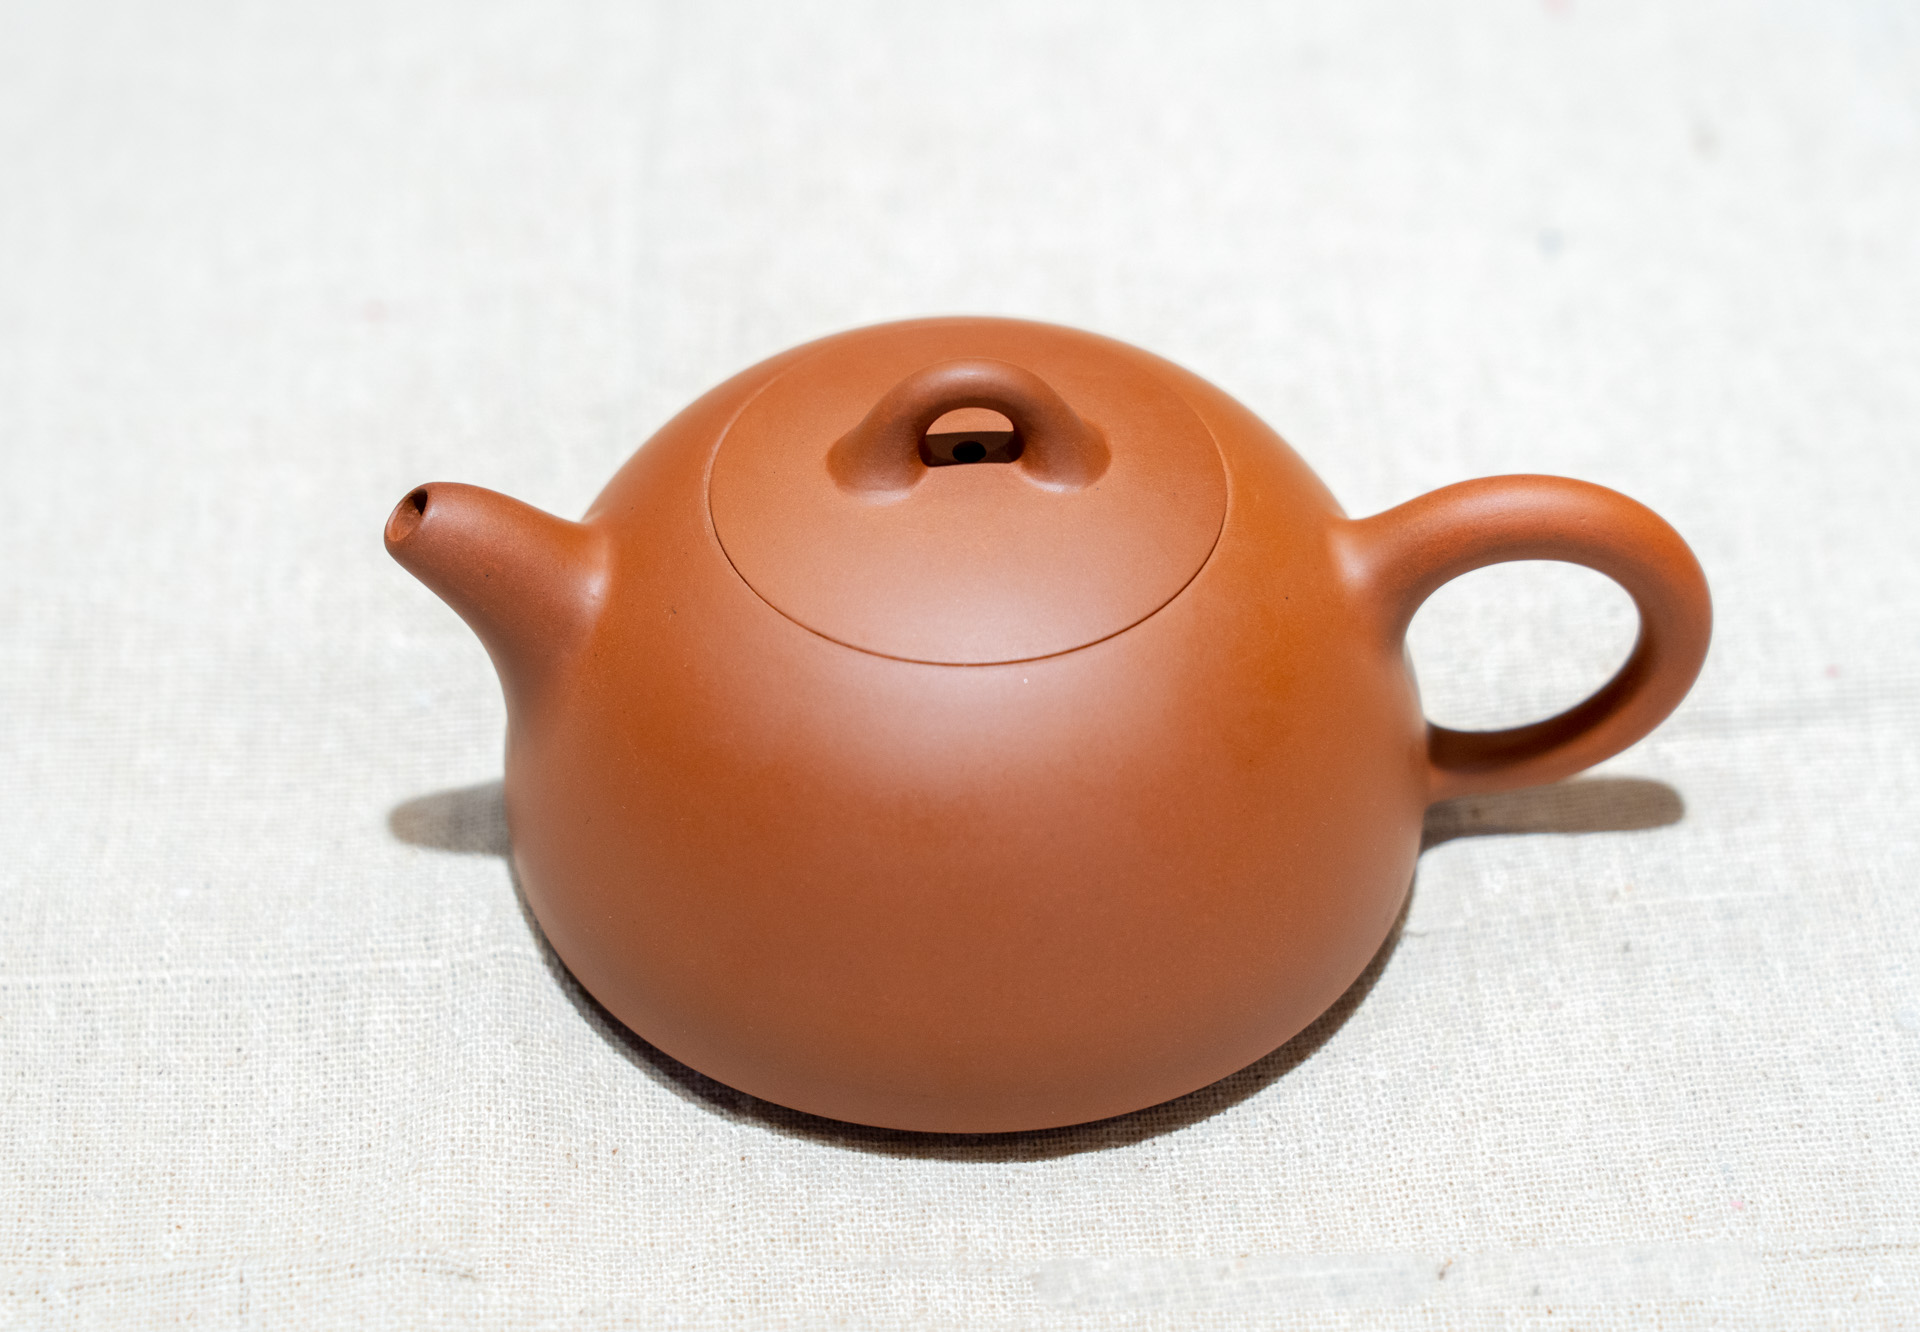 这是我朋友纯手工制作的茶壶